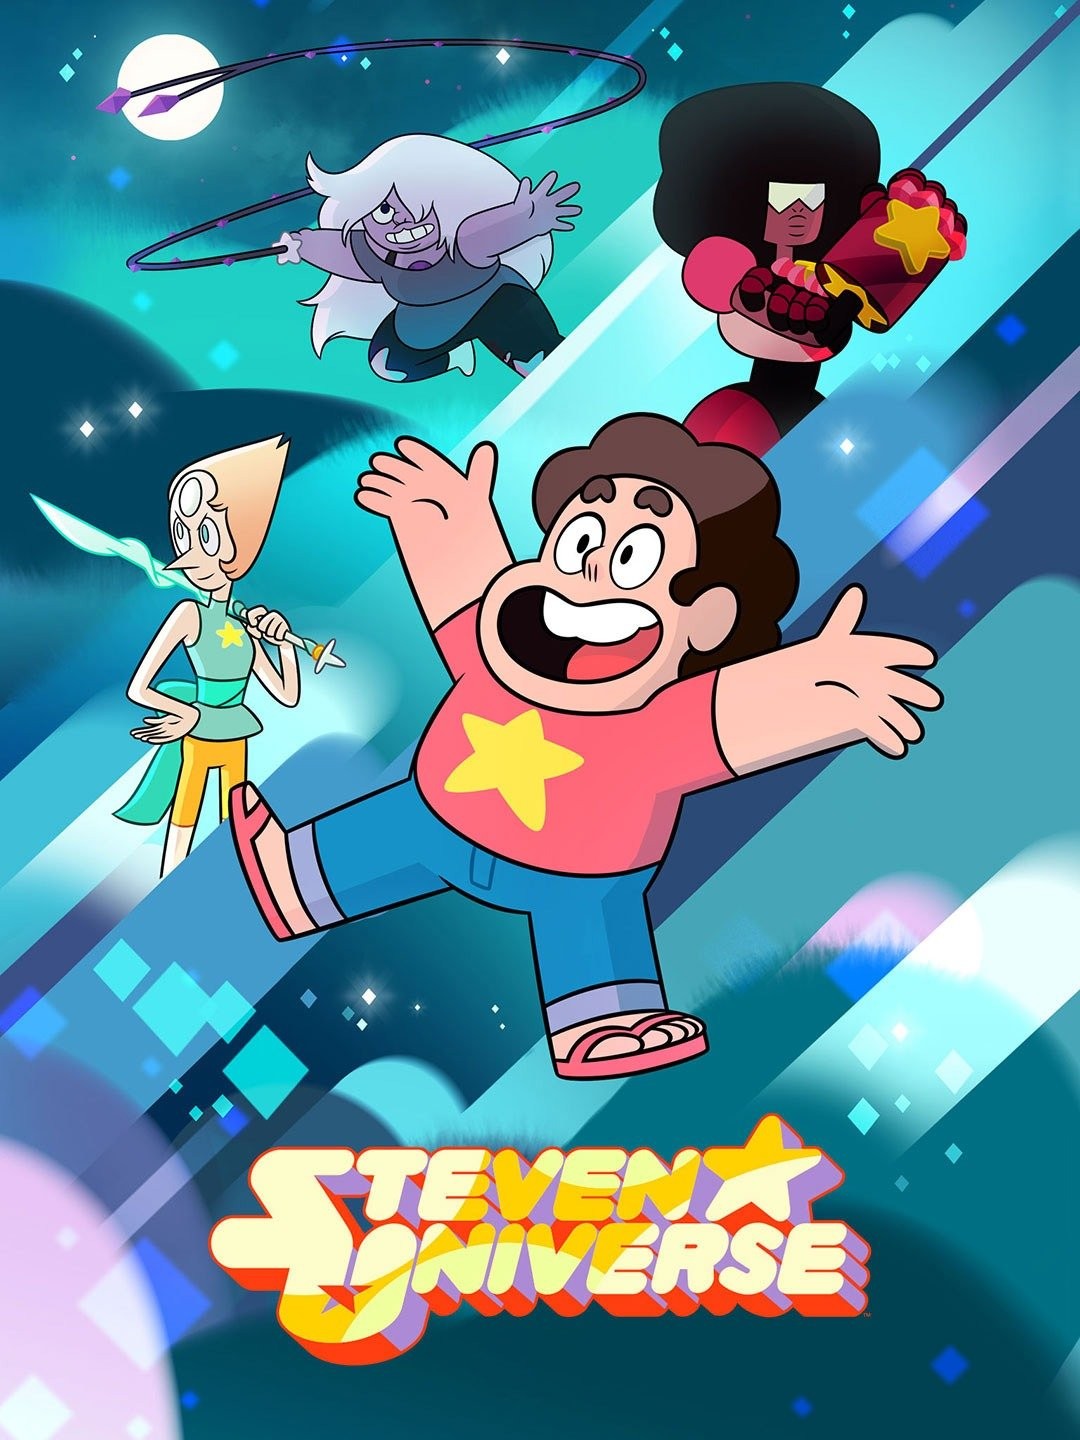 Watch Steven Universe season 1 episode 46 streaming online